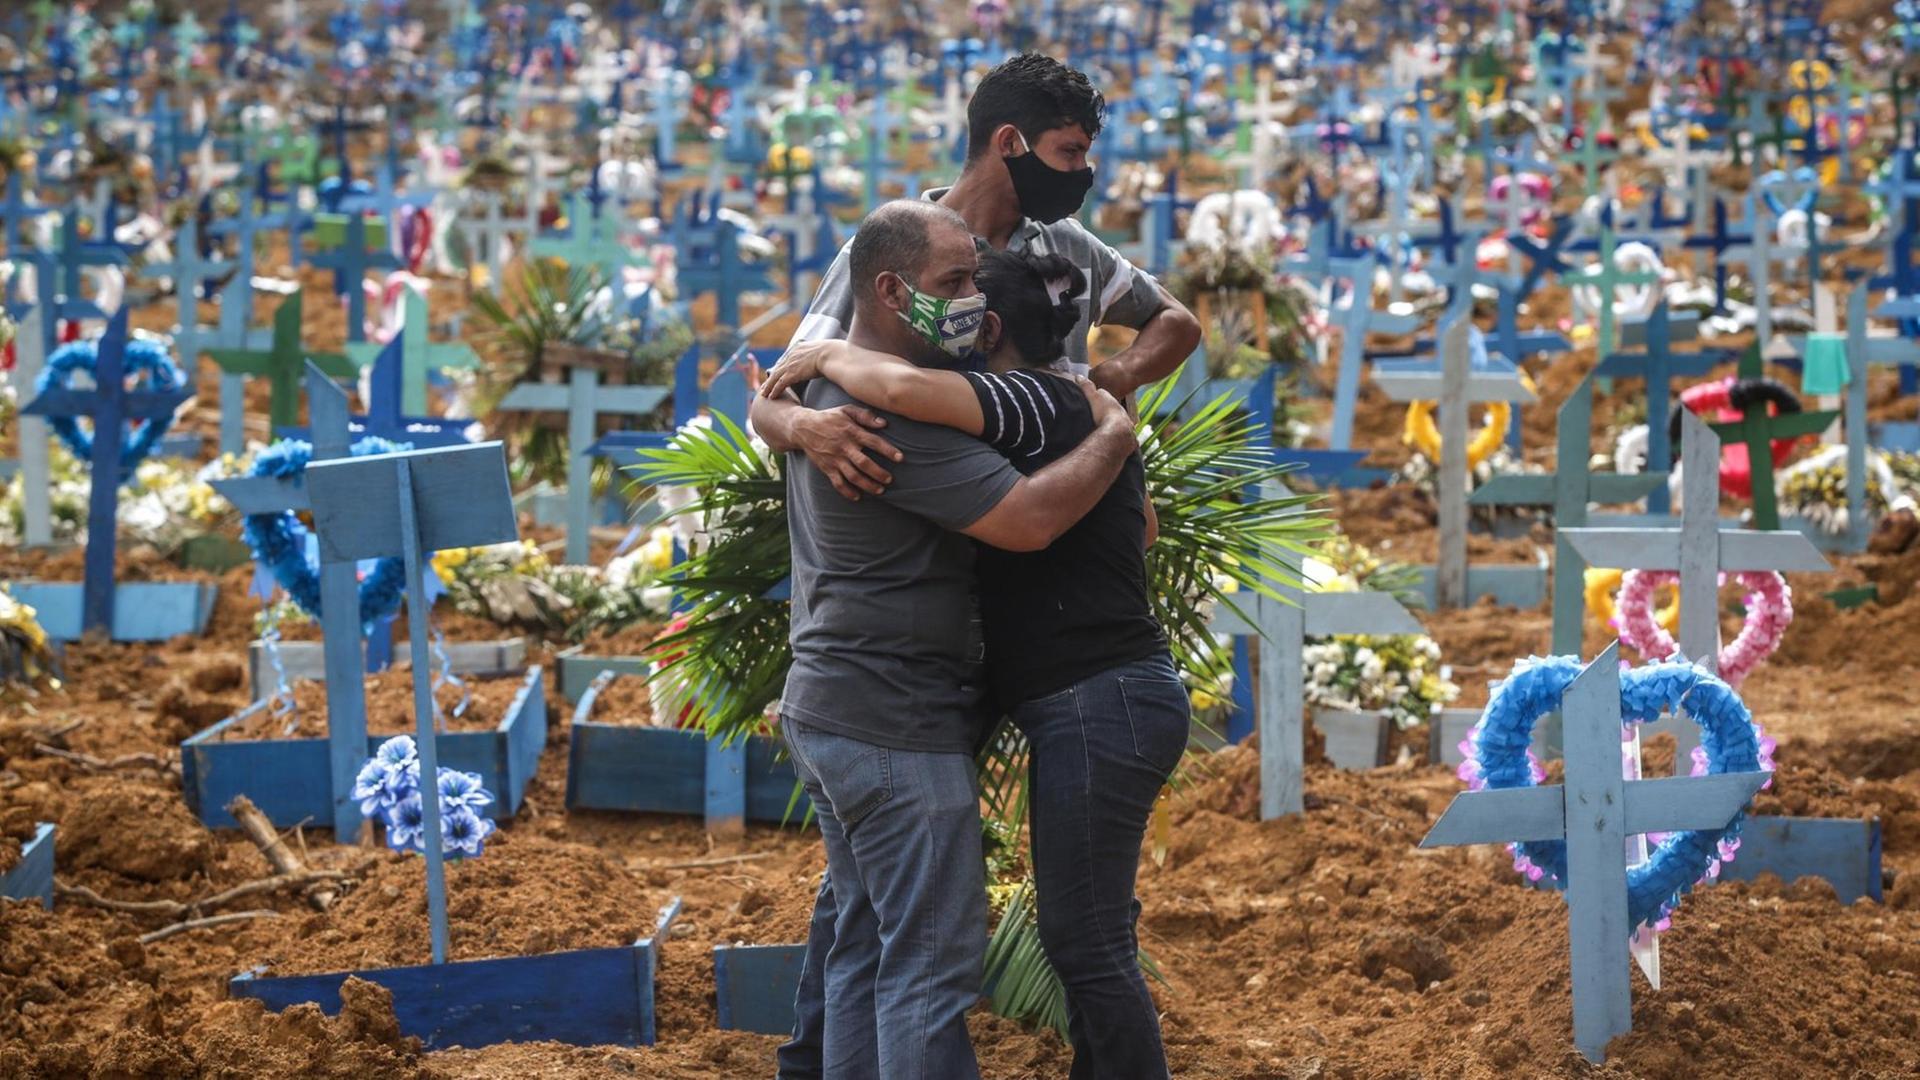 Drei Personen stehen dicht beieinander und umarmen sich, im Hintergrund sind viele Holzkreuze mit bunten Blumenkränzen zu sehen.